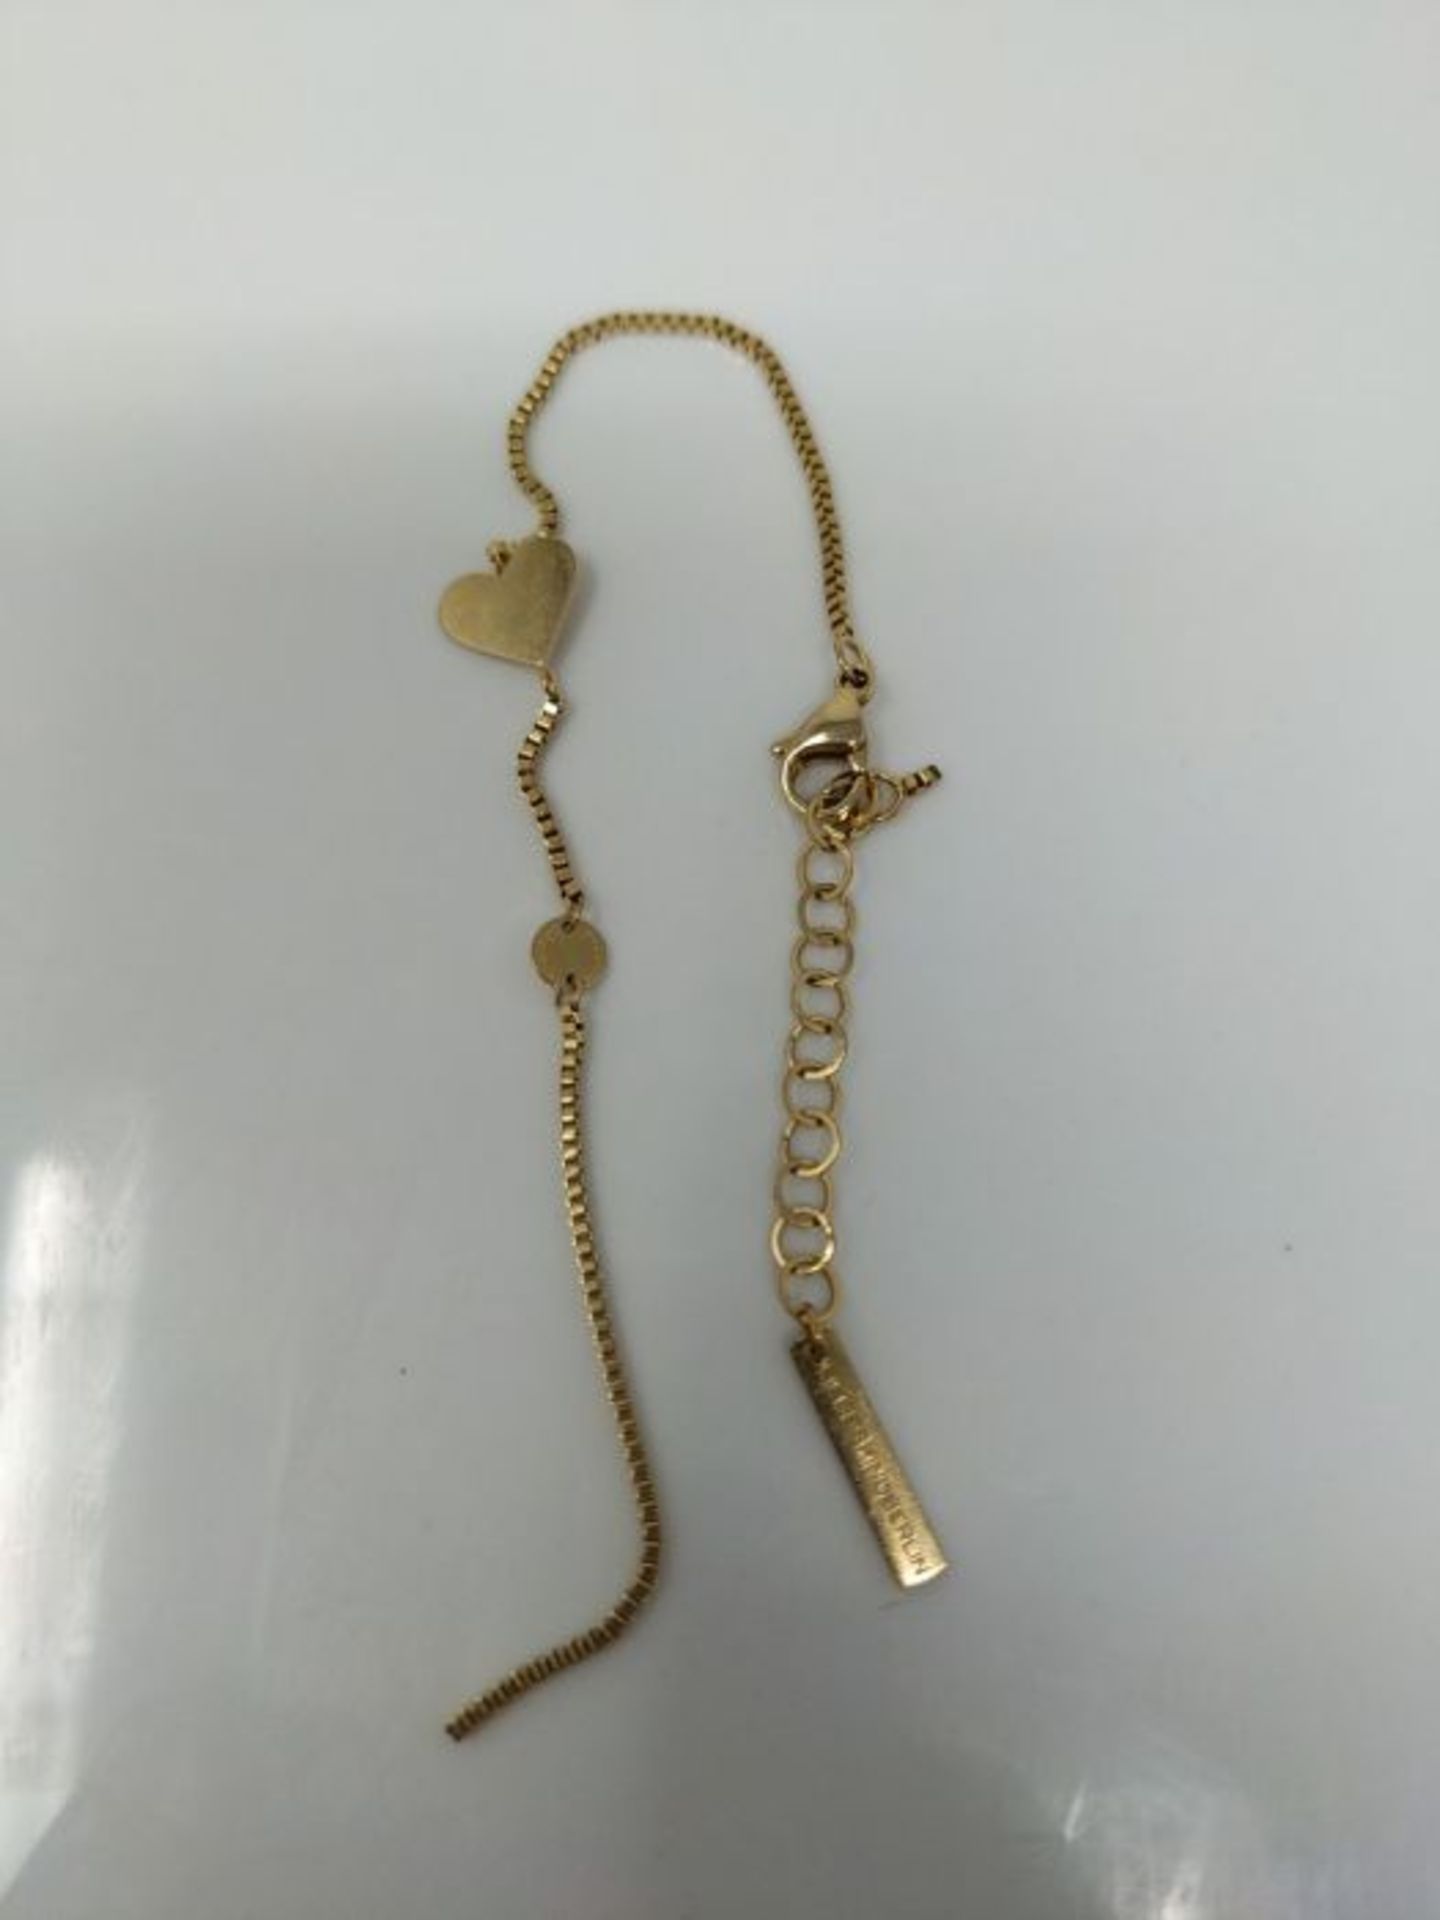 [CRACKED] Liebeskind LJ-0510-B-20 Damen Armband Herz Edelstahl Gold 20 cm - Image 2 of 2